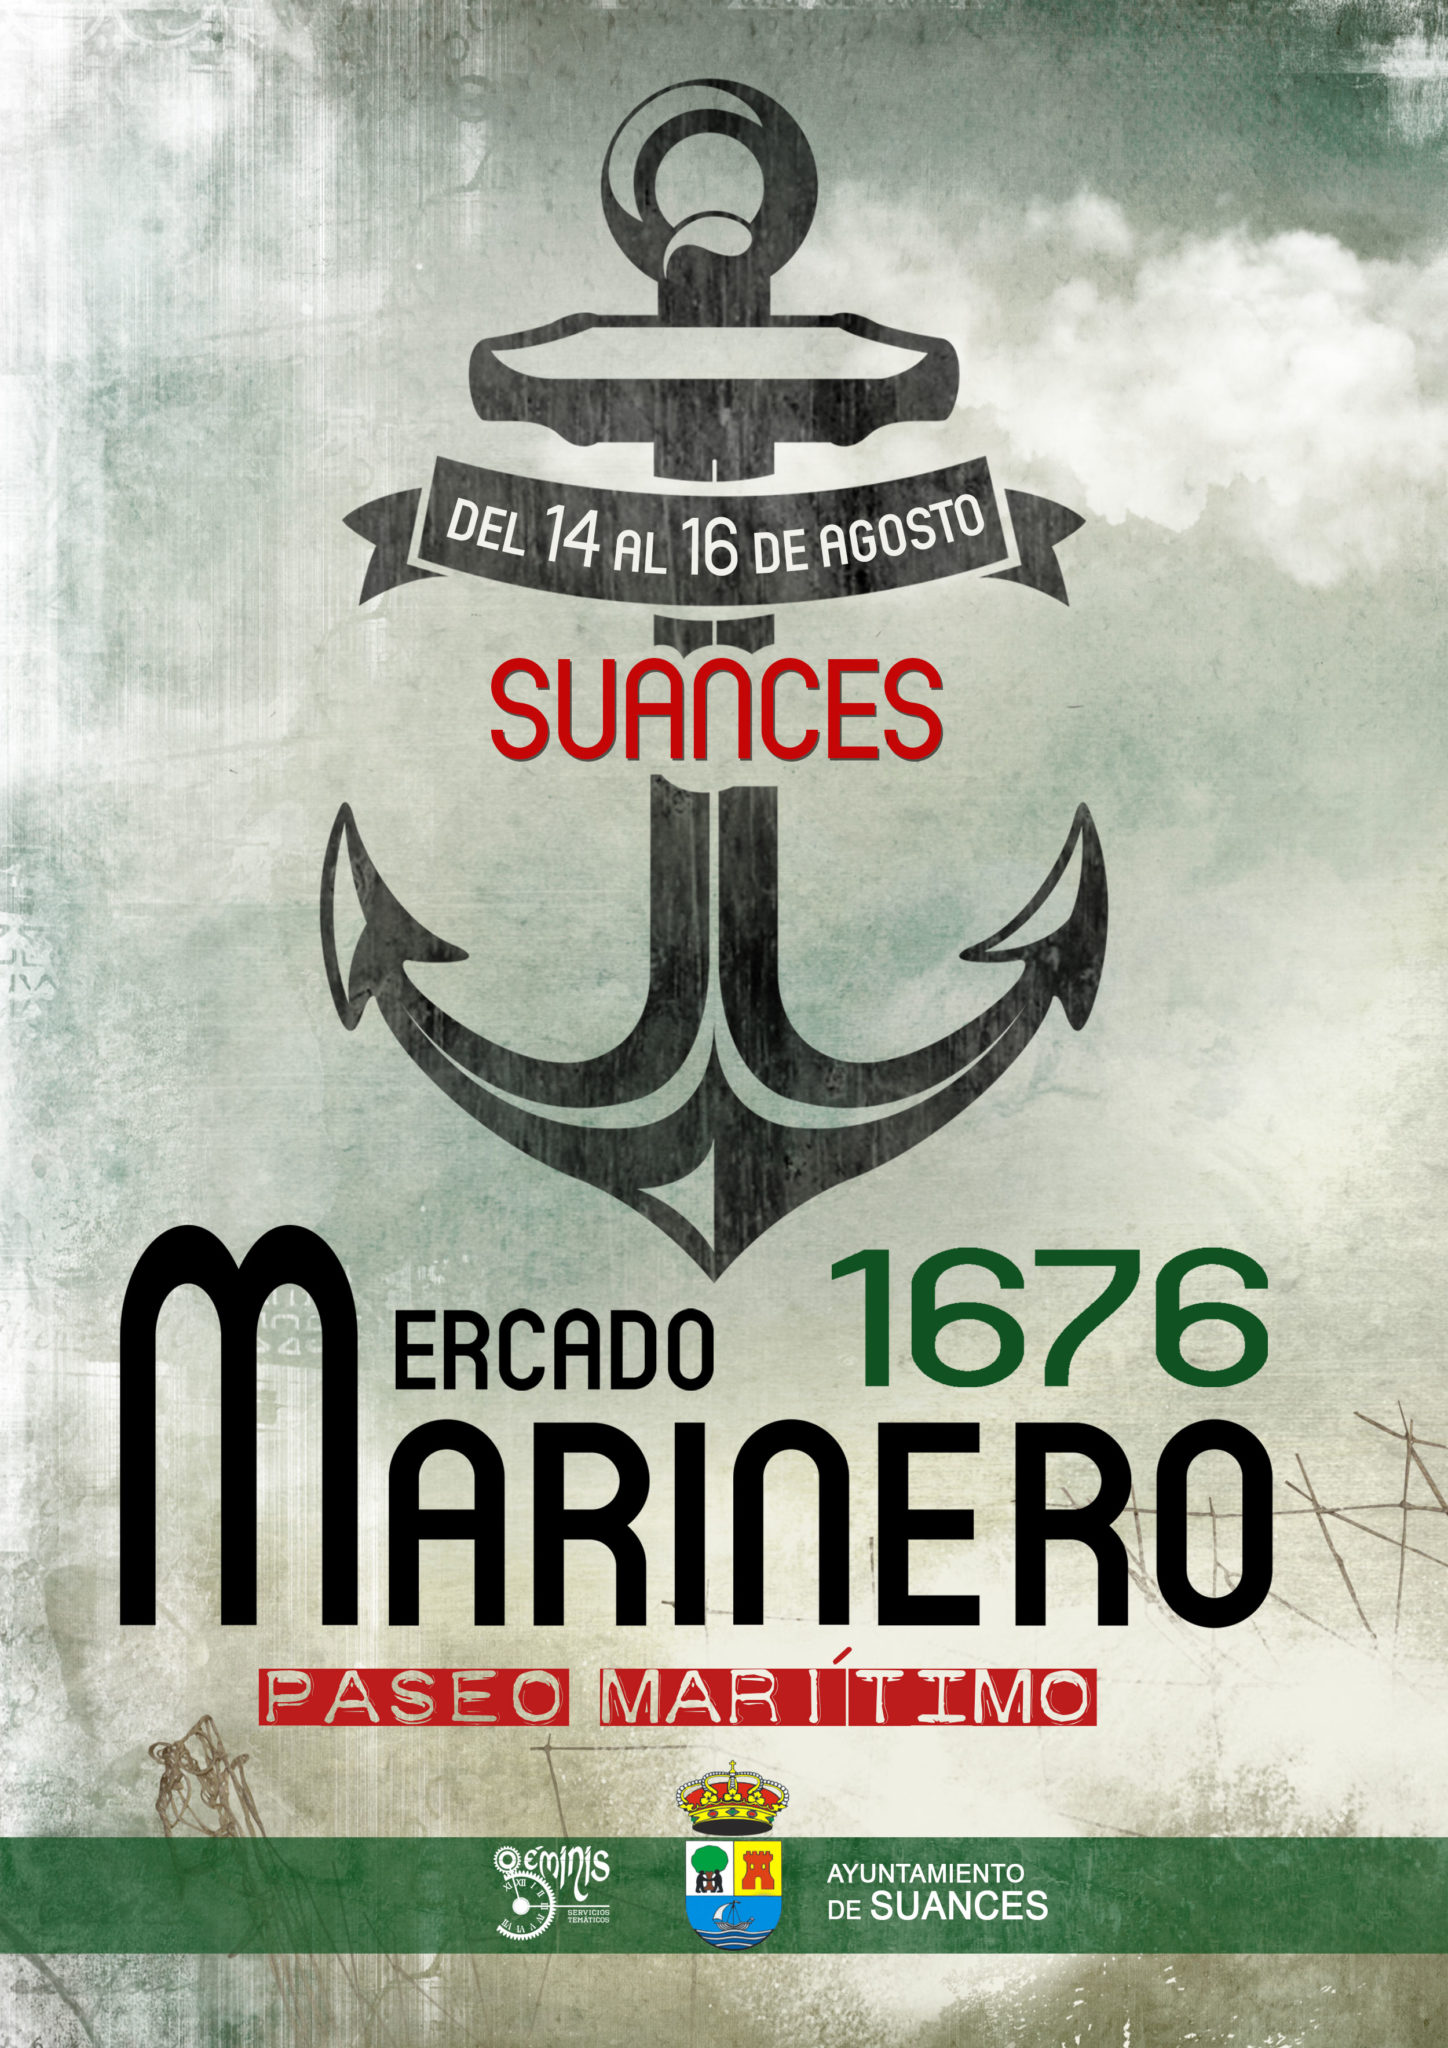 Programacion del mercado marinero de Suances, Cantabria 14 al 16 de Agosto del 2015